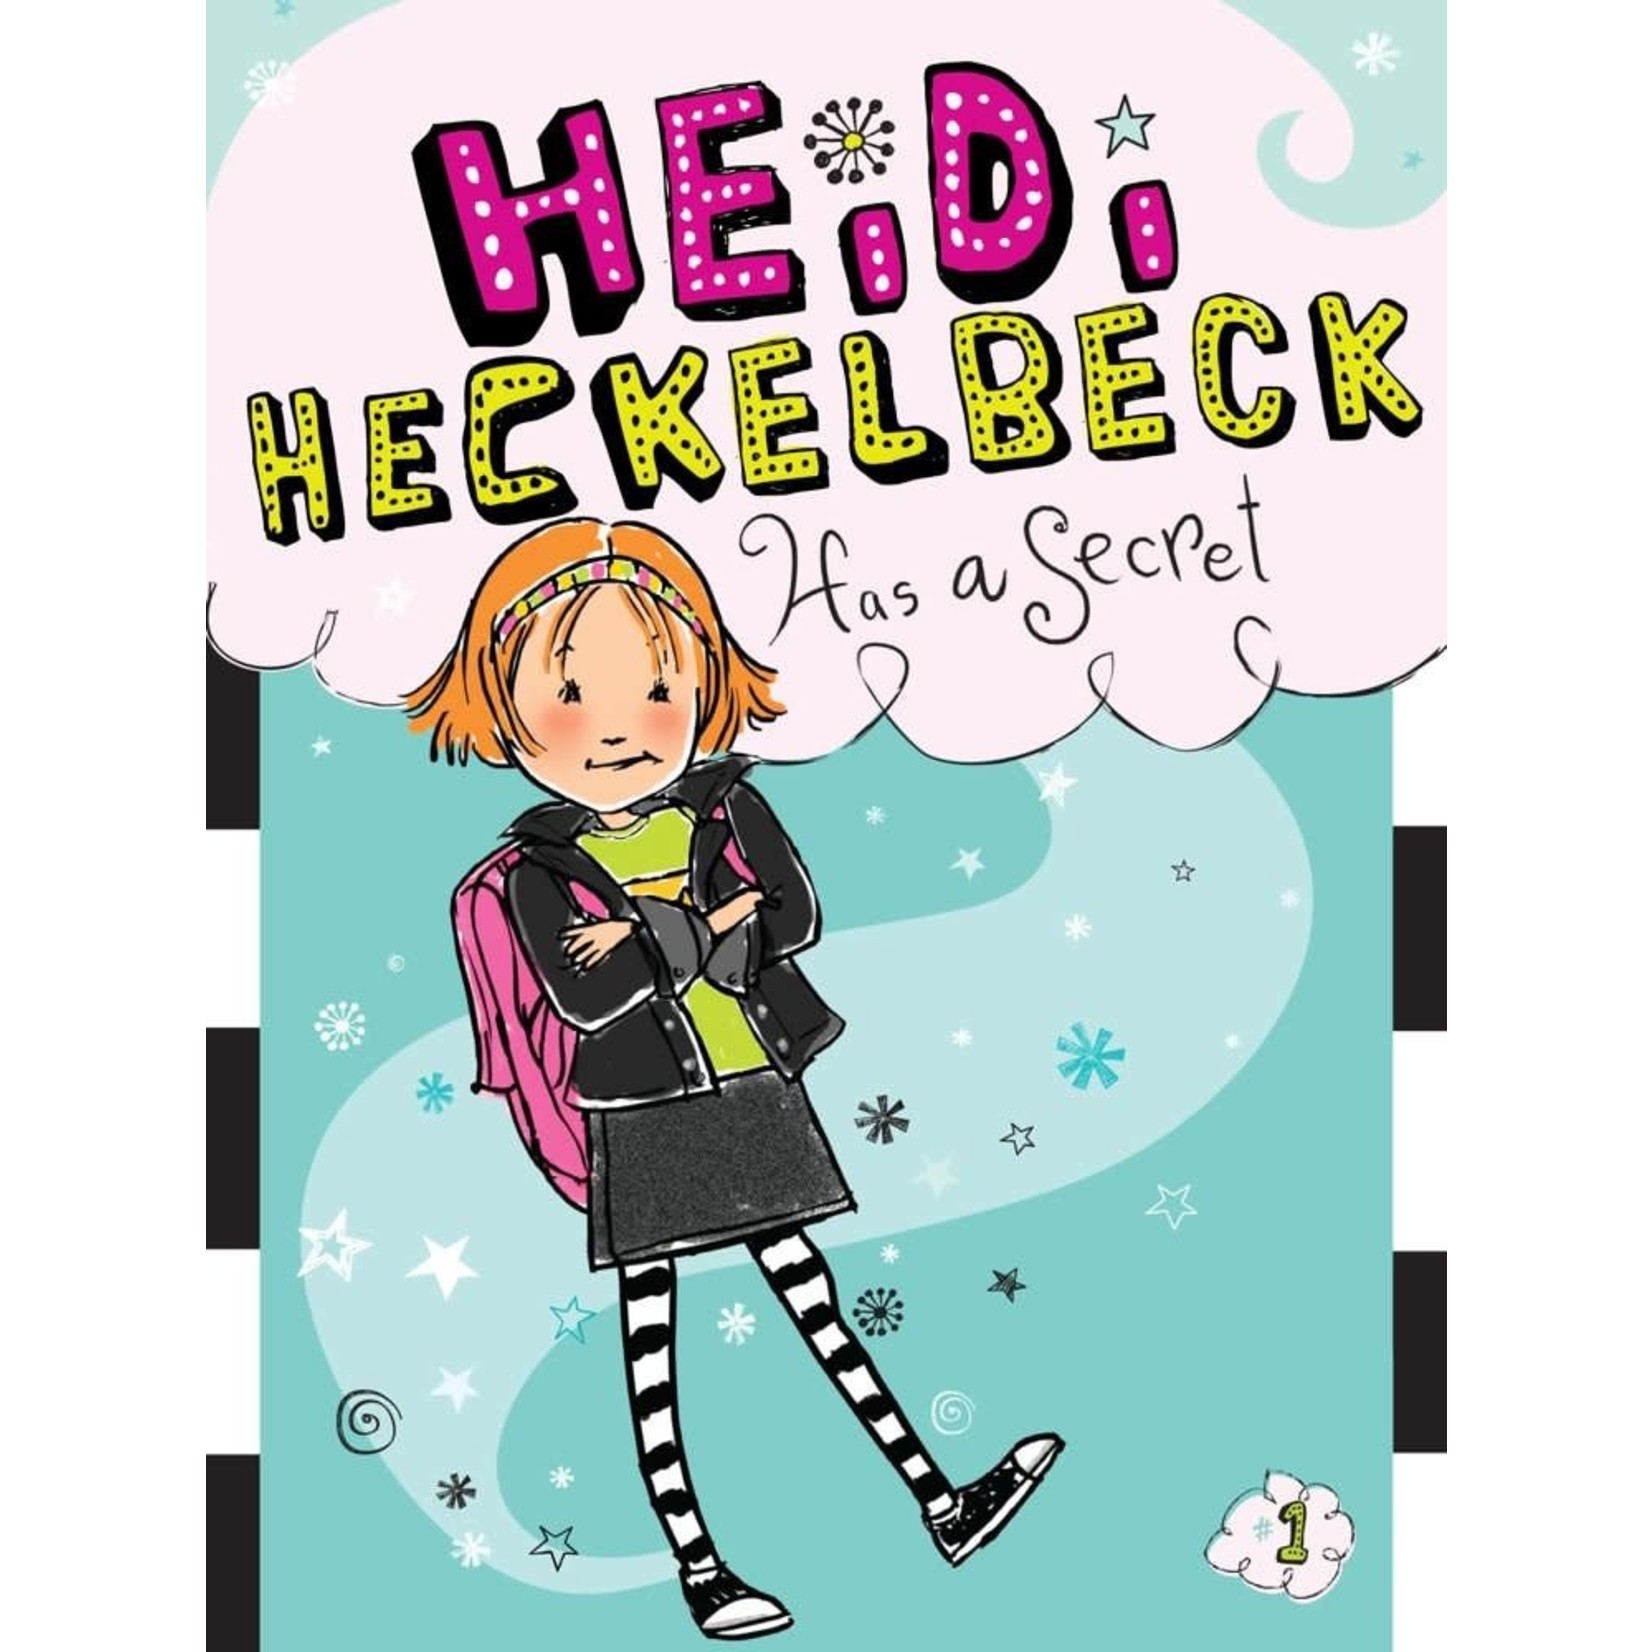 Wanda Coven Heidi Heckelbeck - Has a Secret (Book #1)